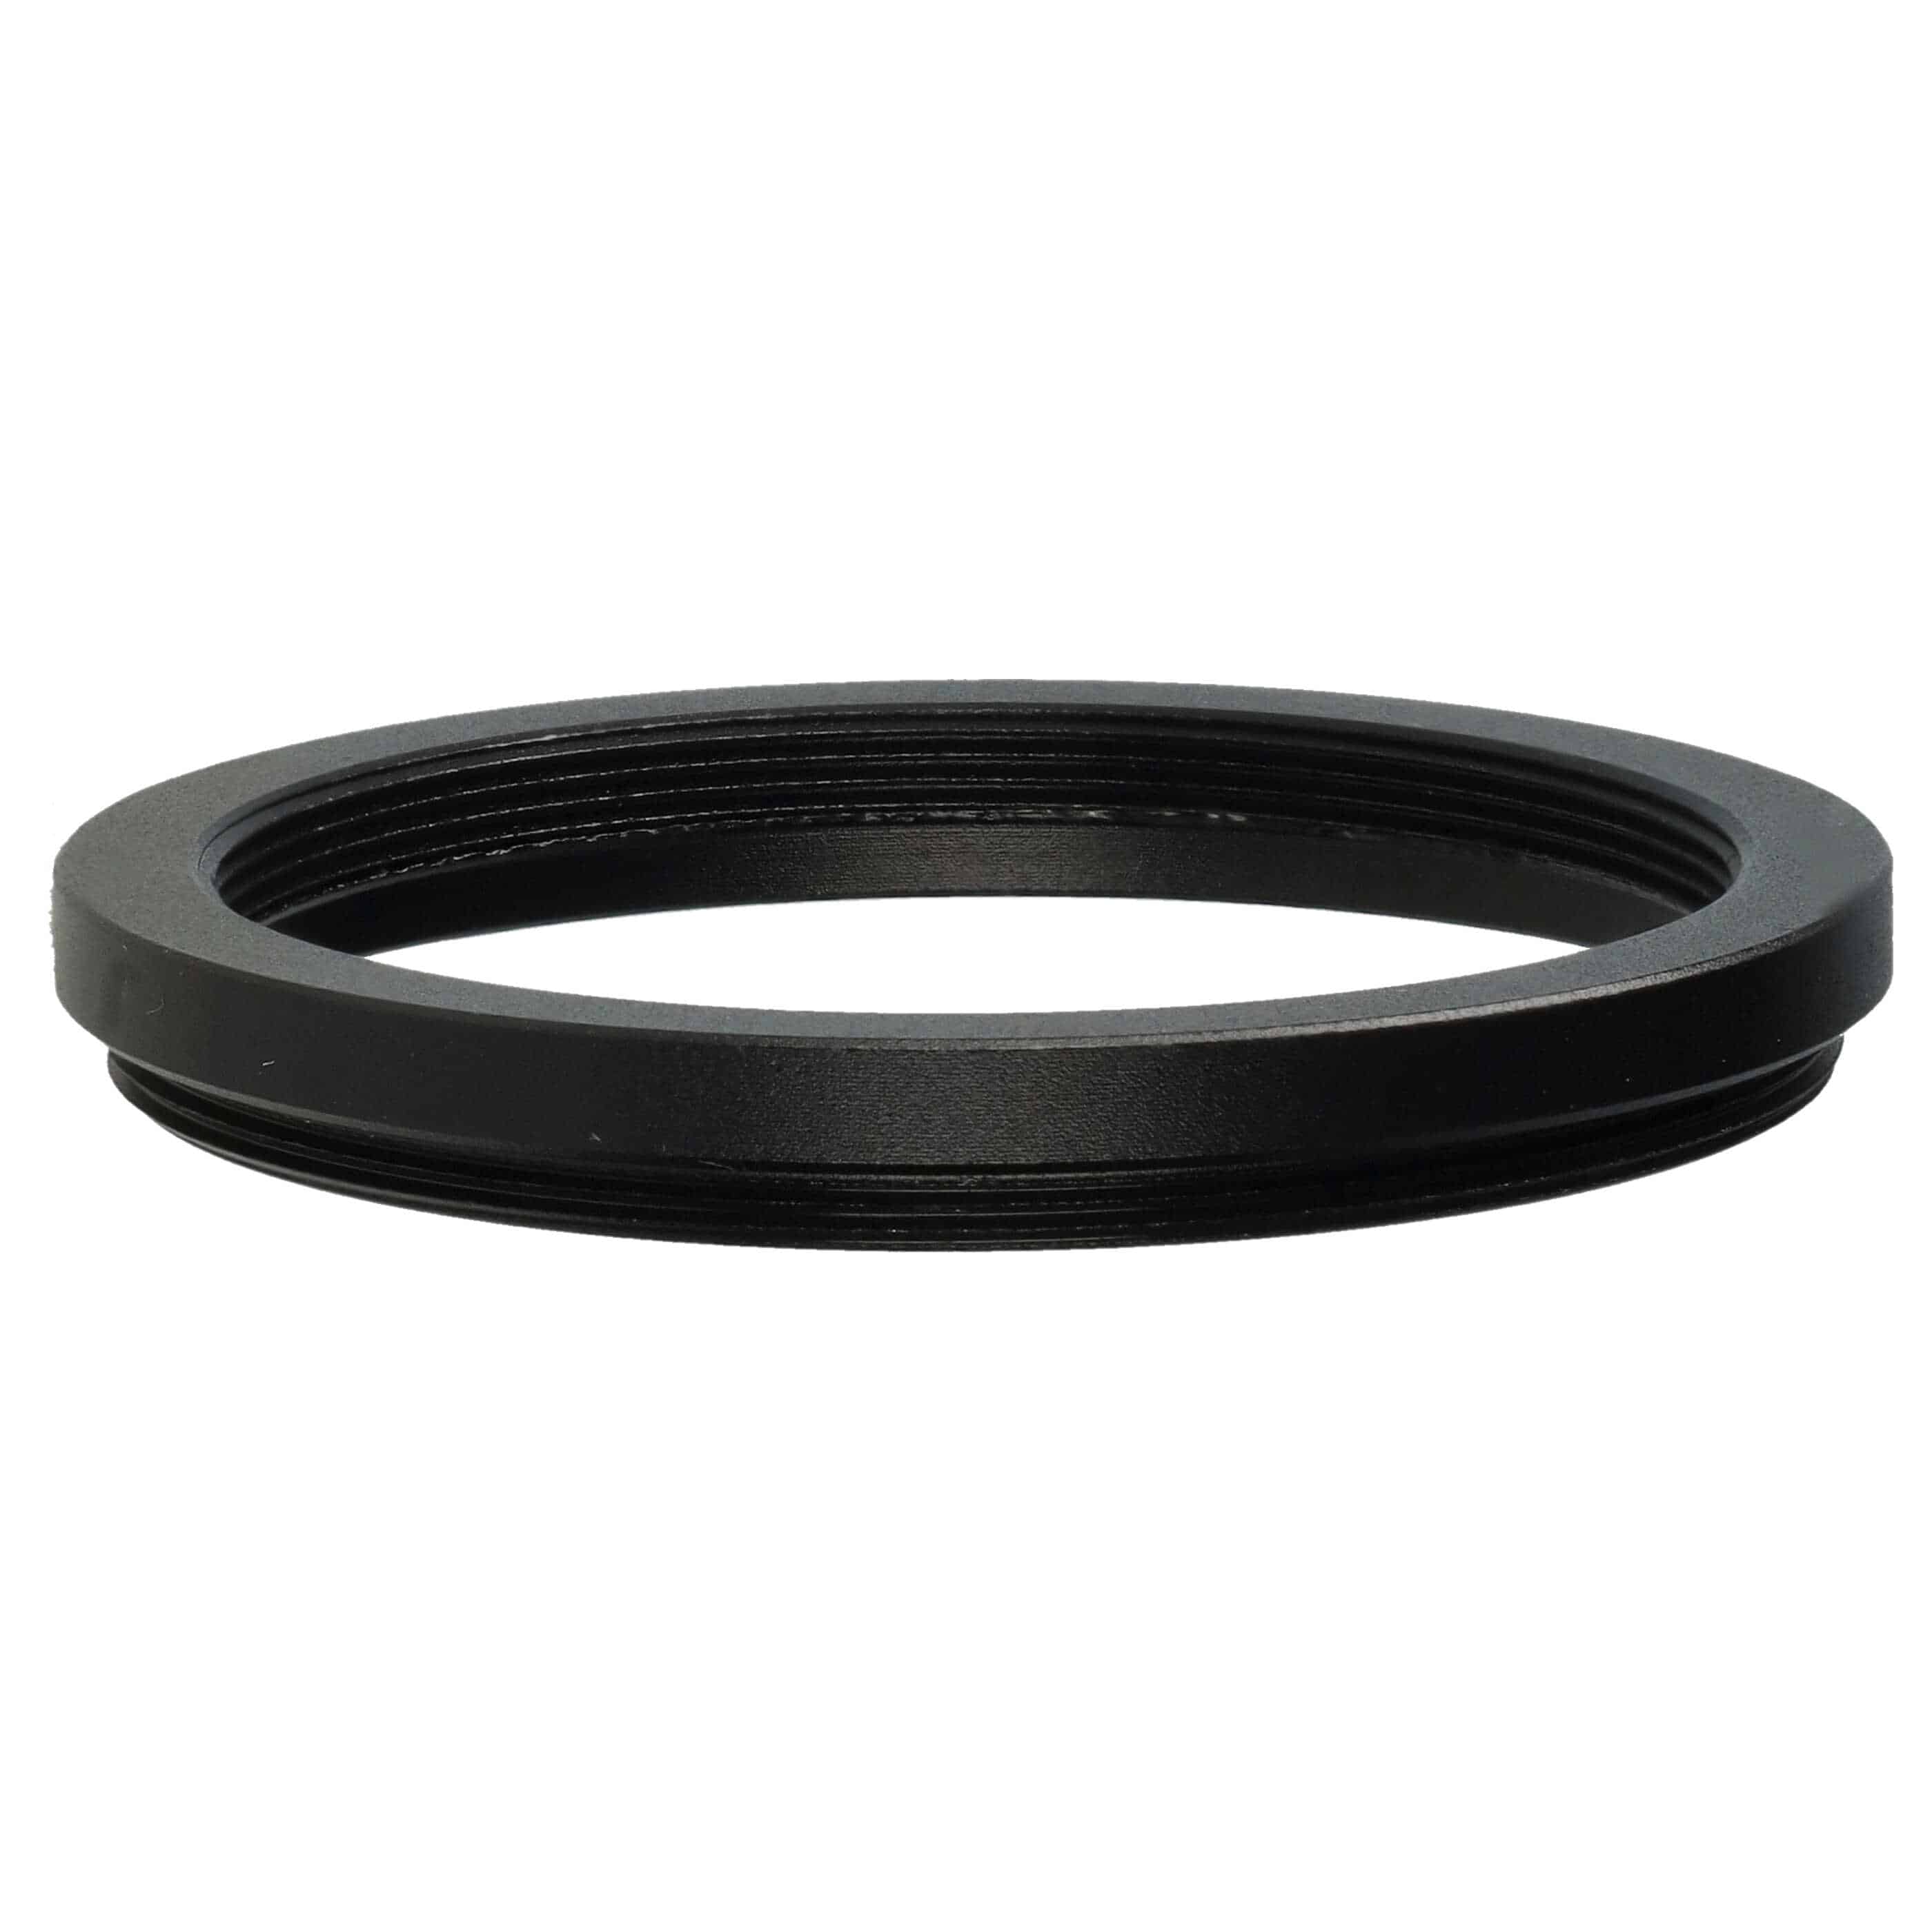 Anello adattatore step-down da 49 mm a 43 mm per obiettivo fotocamera - Adattatore filtro, metallo, nero